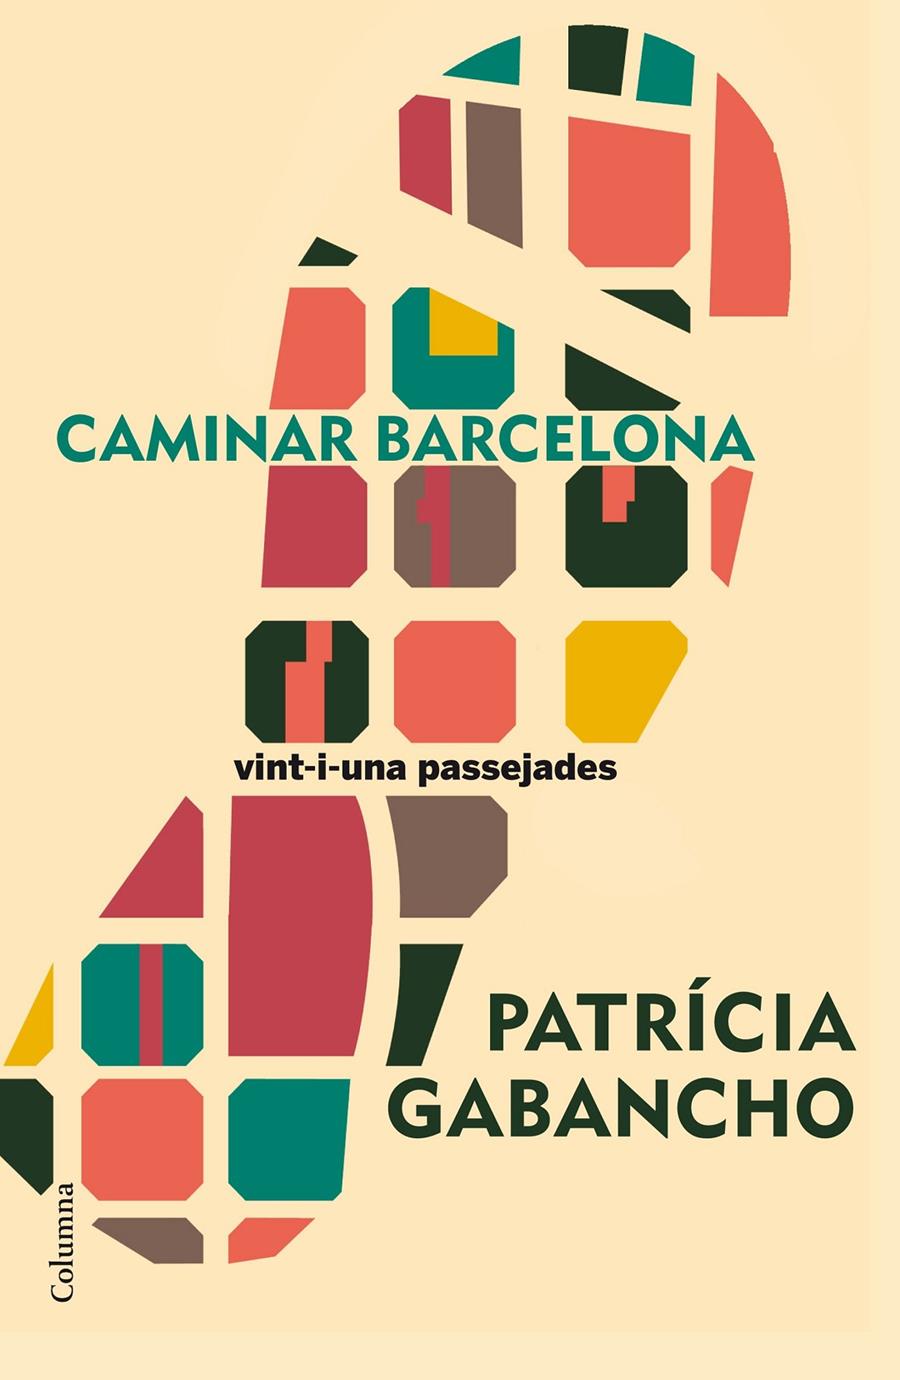 Caminar Barcelona | Patricia Gabancho Ghielmetti | Cooperativa autogestionària